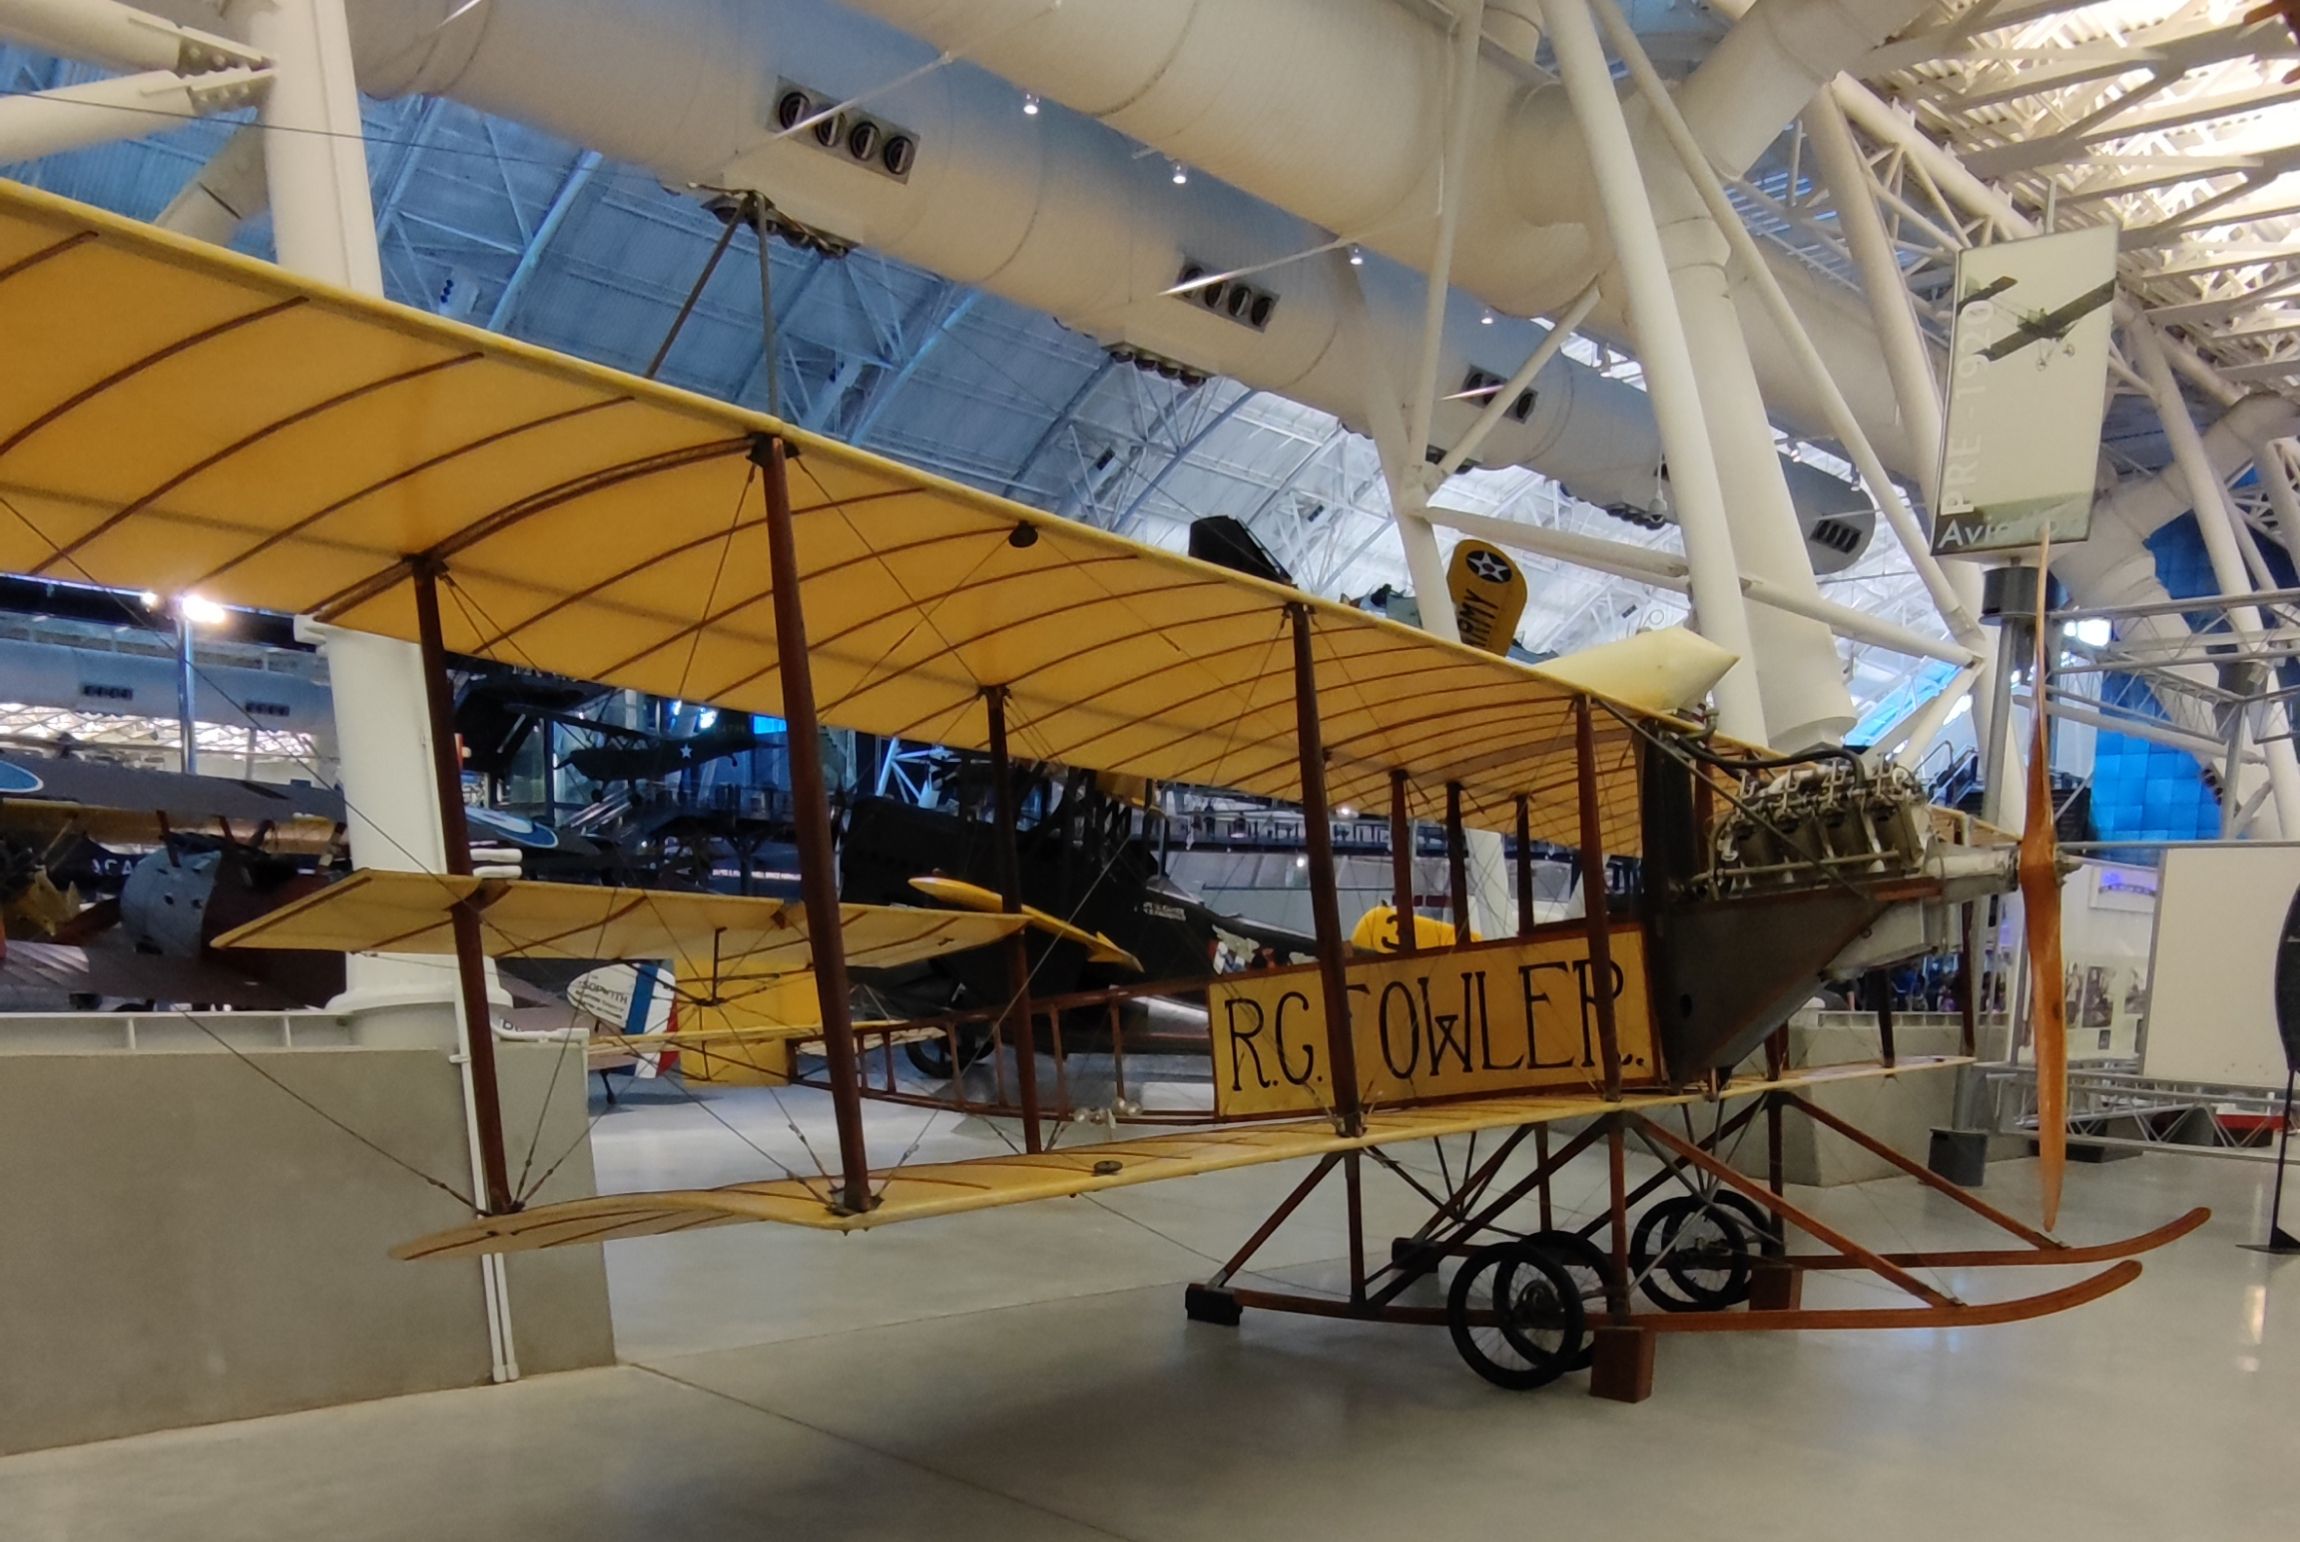 The 1912 Fowler-Gage biplane